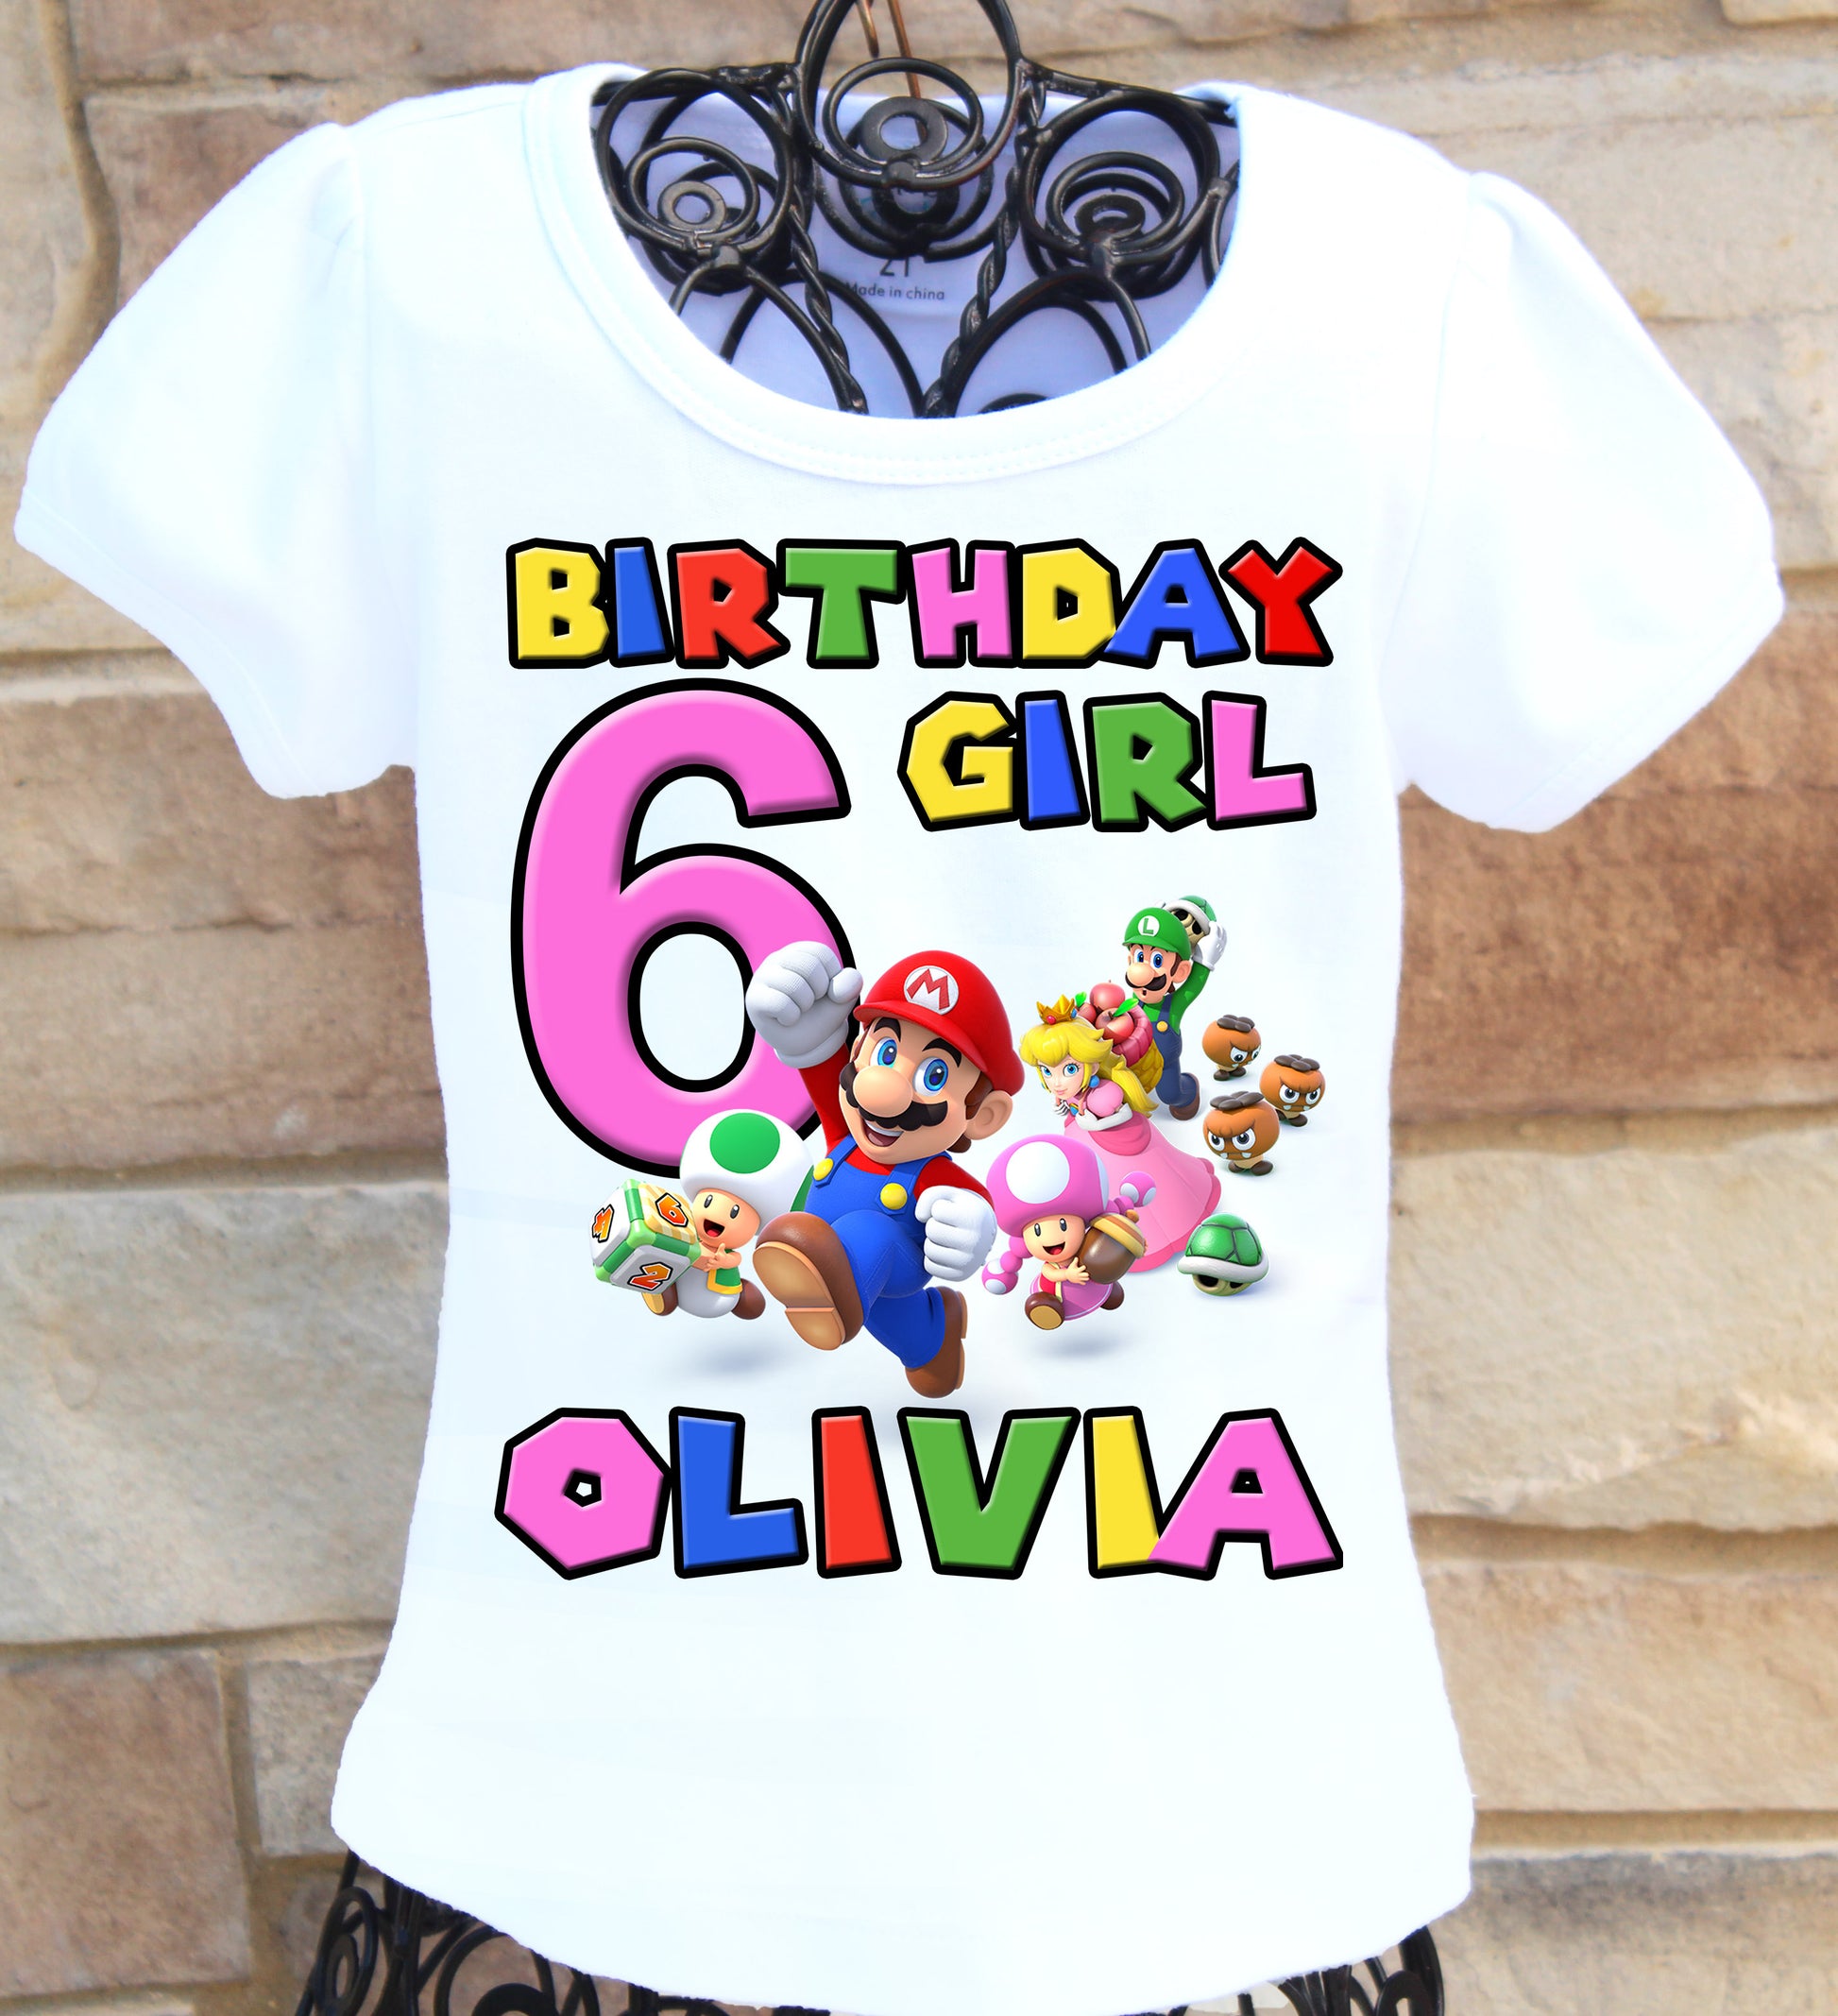 Mario birthday girl shirt